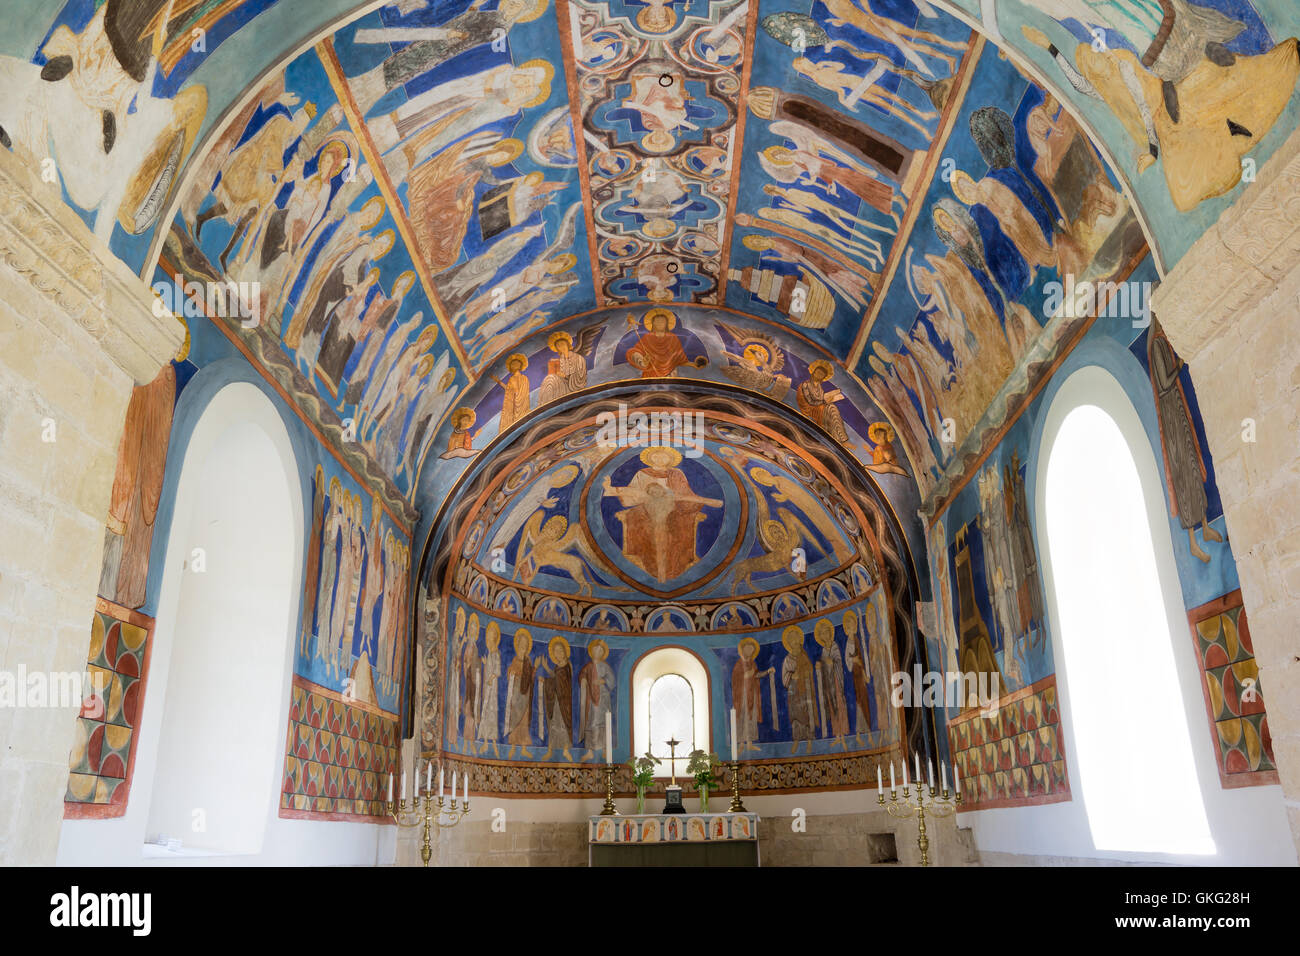 Des peintures murales romanes dans une église suédoise Banque D'Images